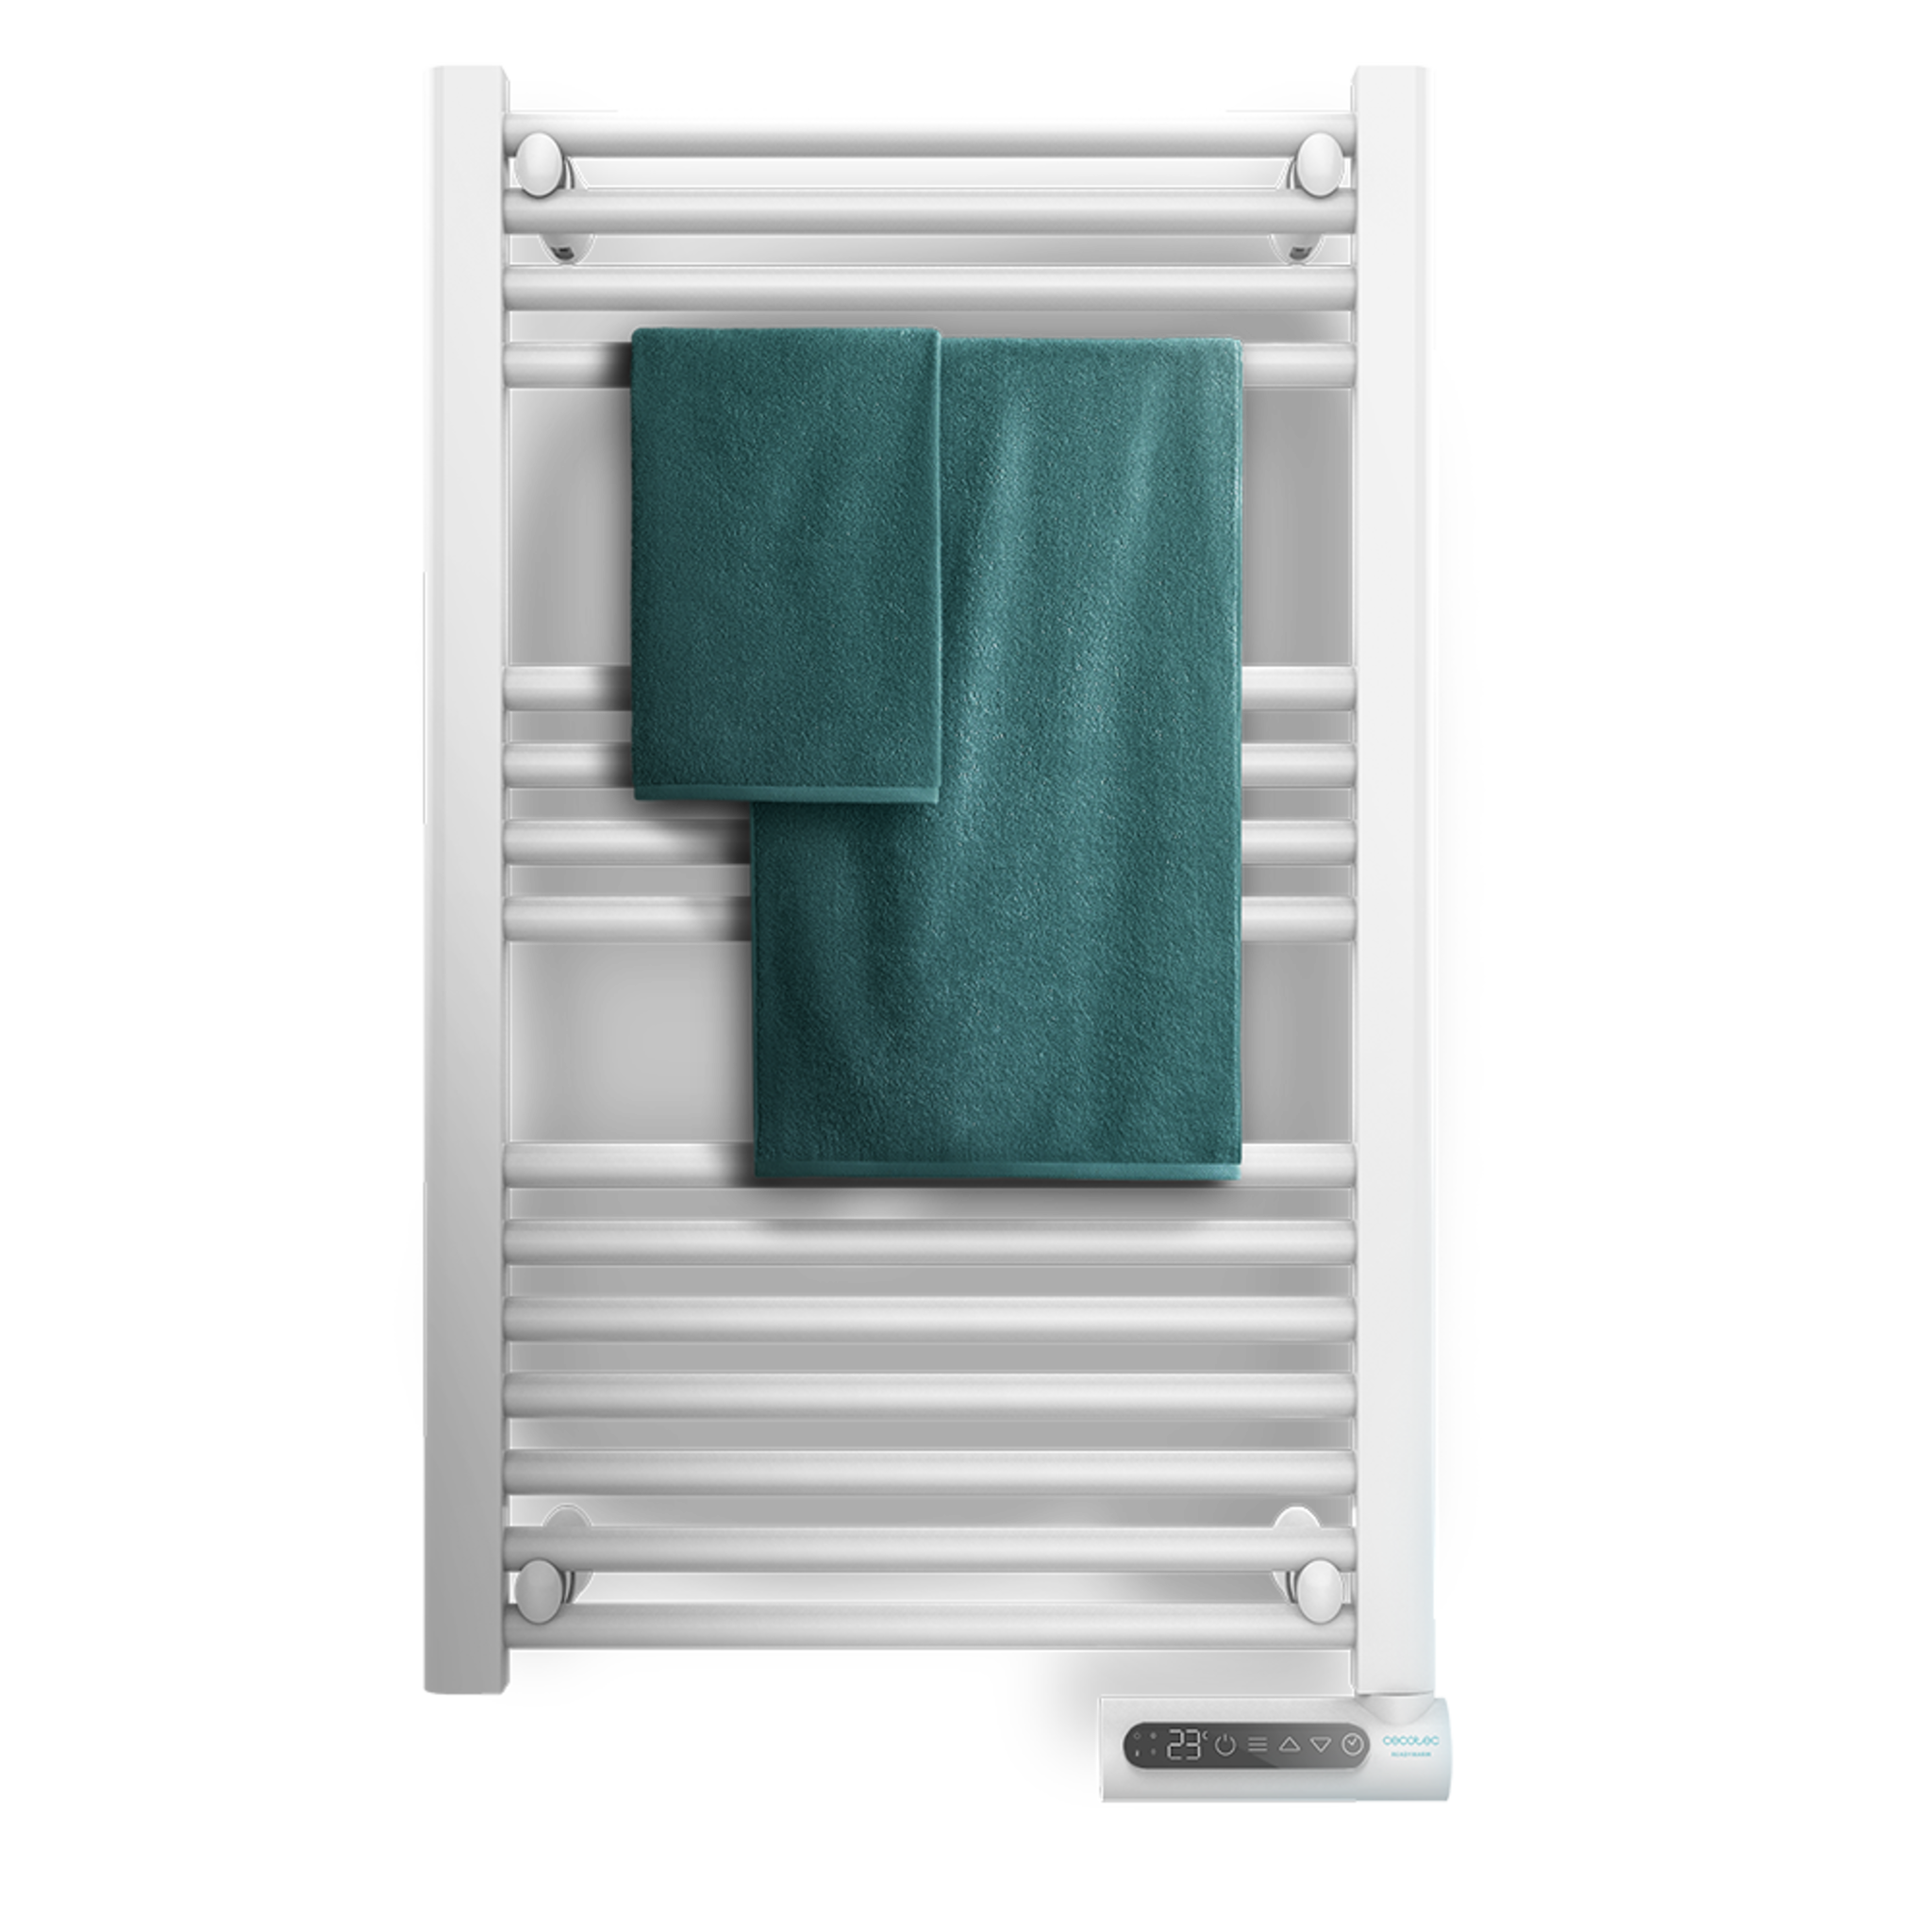 Ready Warm 9100 Smart Towel White energieeffizienter Badheizkörper 500 W, LED-Anzeige, Touch Control, Timer, 3 Betriebsarten, 2 Sicherheitssysteme